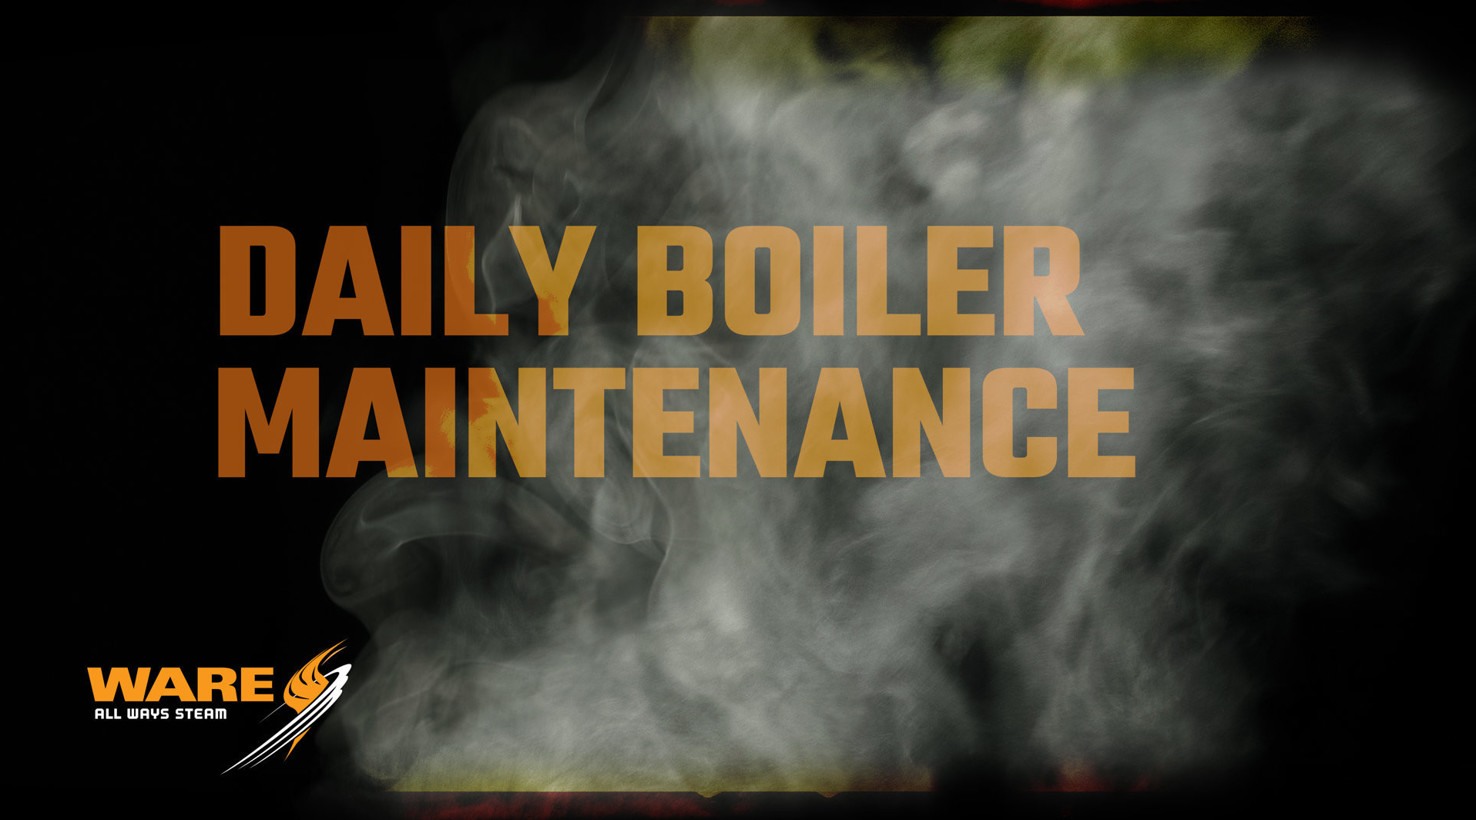 Daily Steam Boiler Maintenance in the Boiler Room